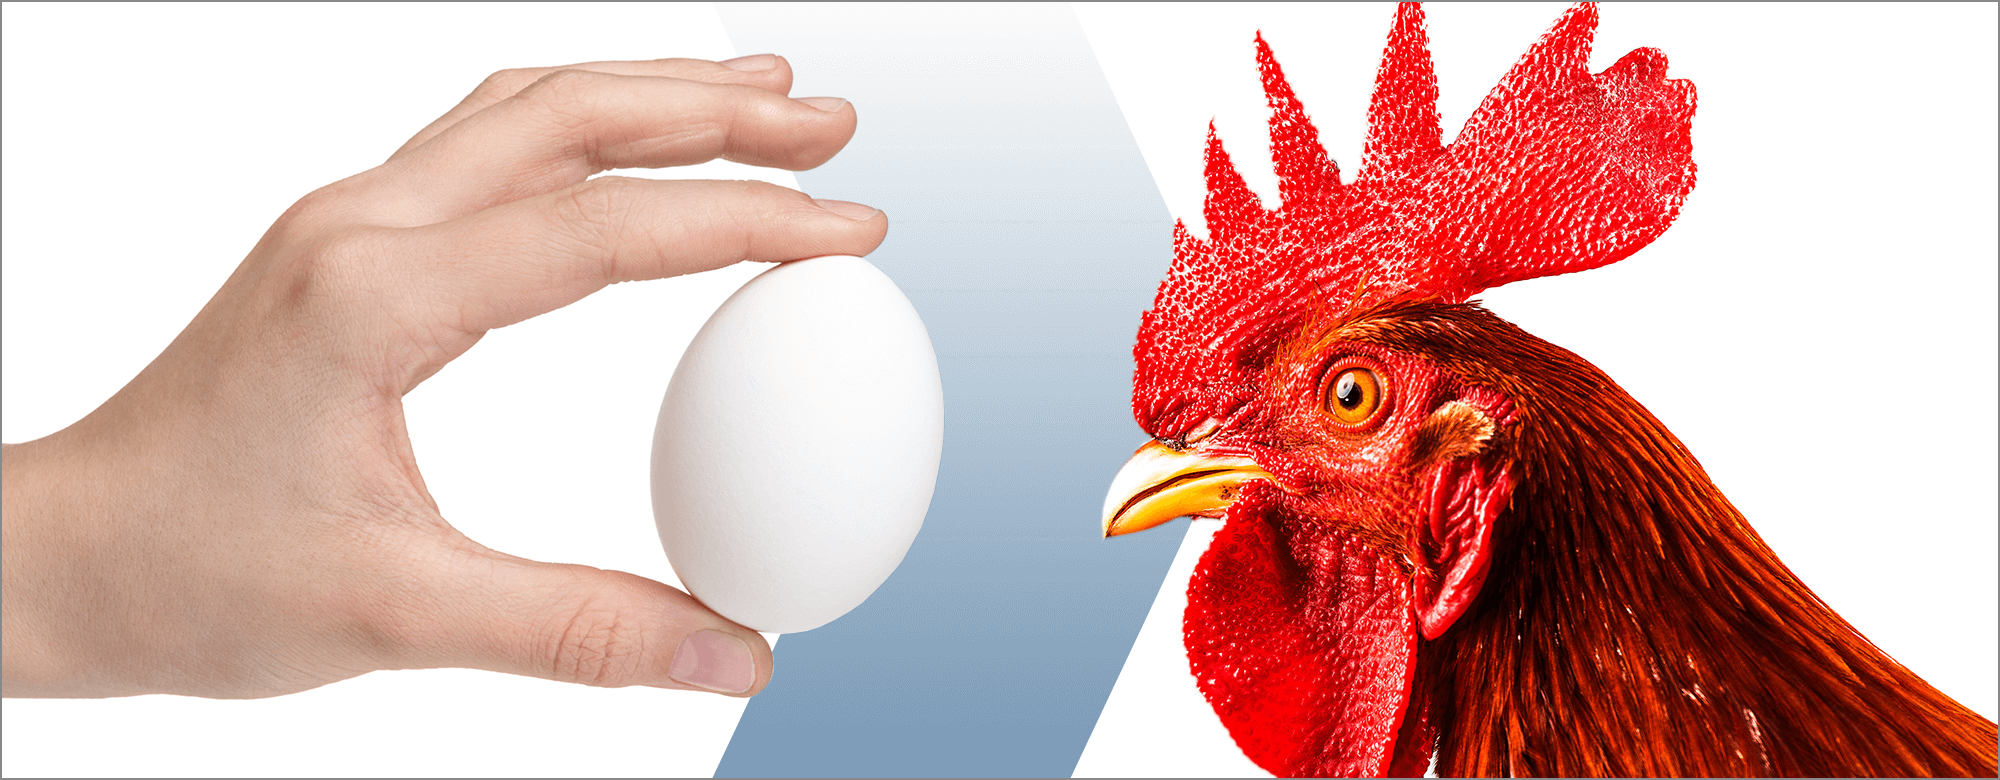 Chicken or egg? Copy or design?